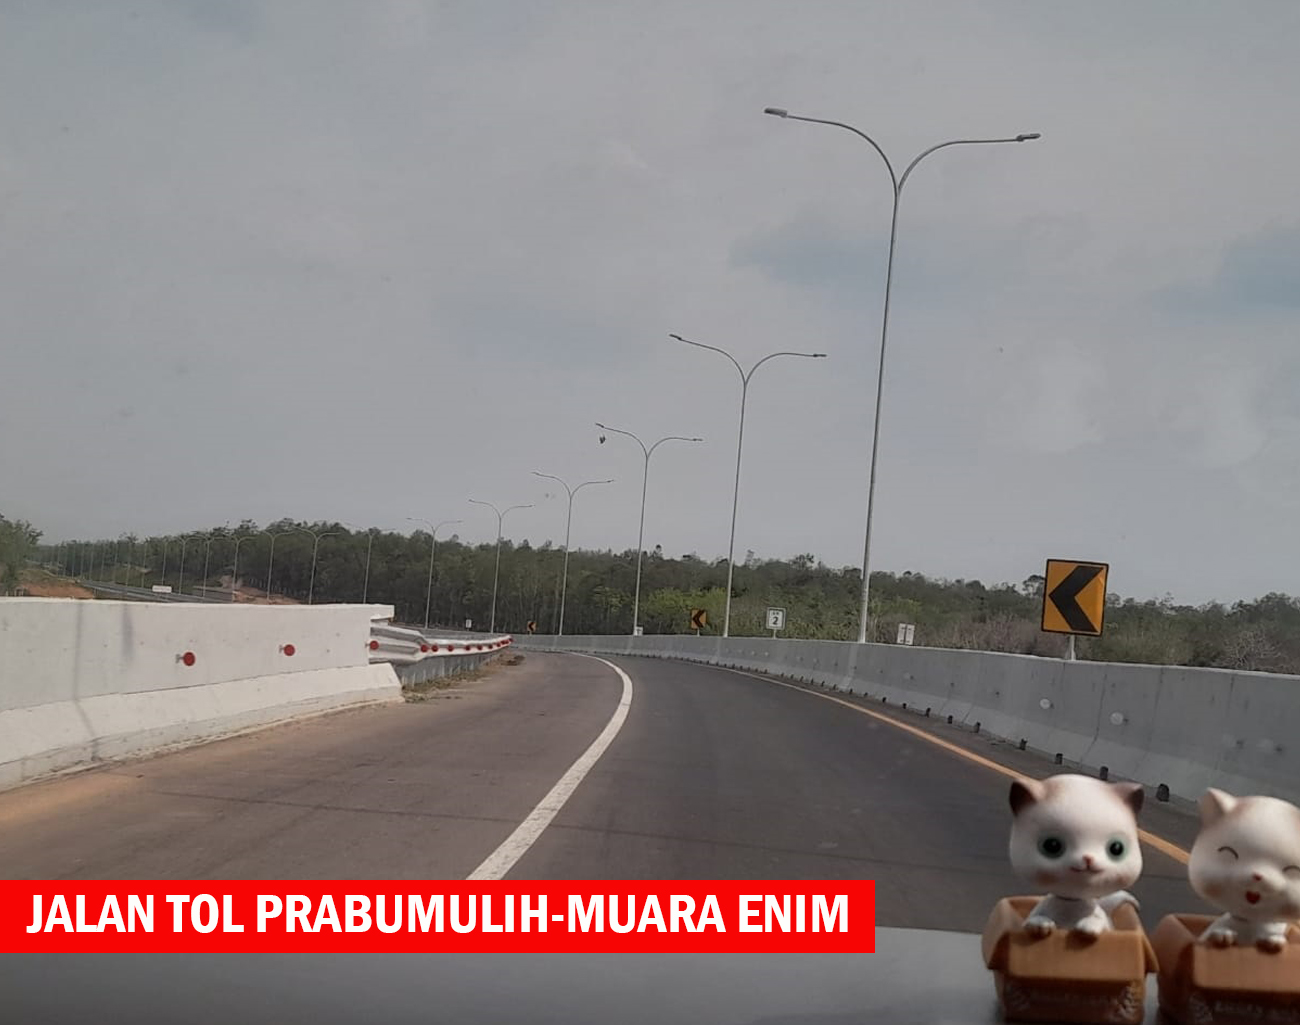 Hutama Karya Telah Pasang Marka Jalan Tol Prabumulih-Muara Enim Persisnya di Km 82 Jalan Tol Prabumulih